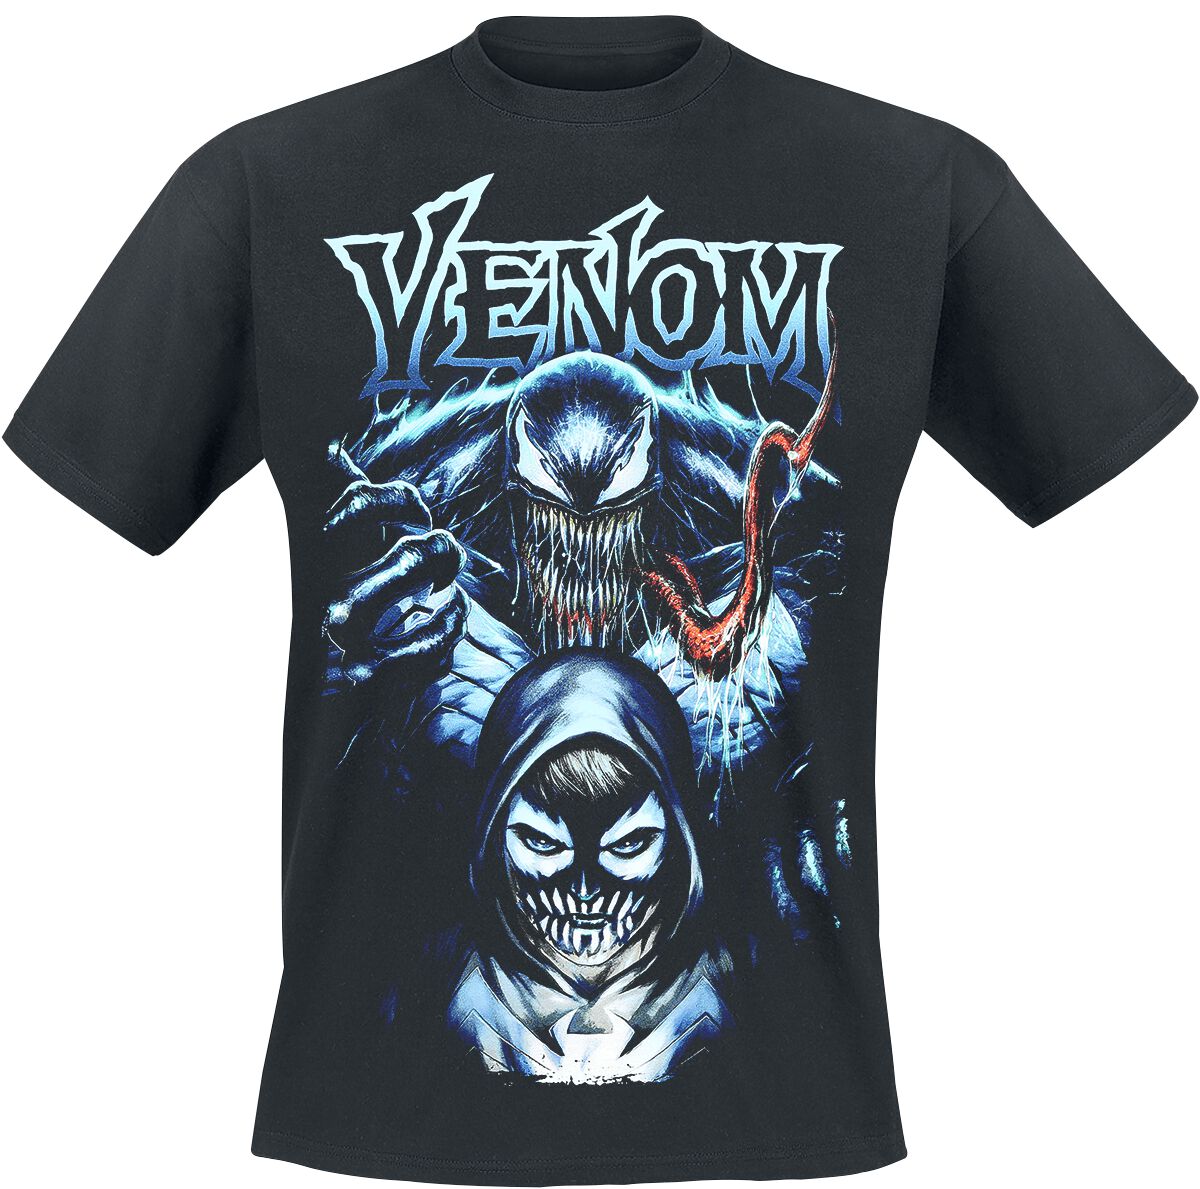 Venom (Marvel) - Marvel T-Shirt - Venom - Join The Fight - S bis XXL - für Männer - Größe XXL - schwarz  - Lizenzierter Fanartikel